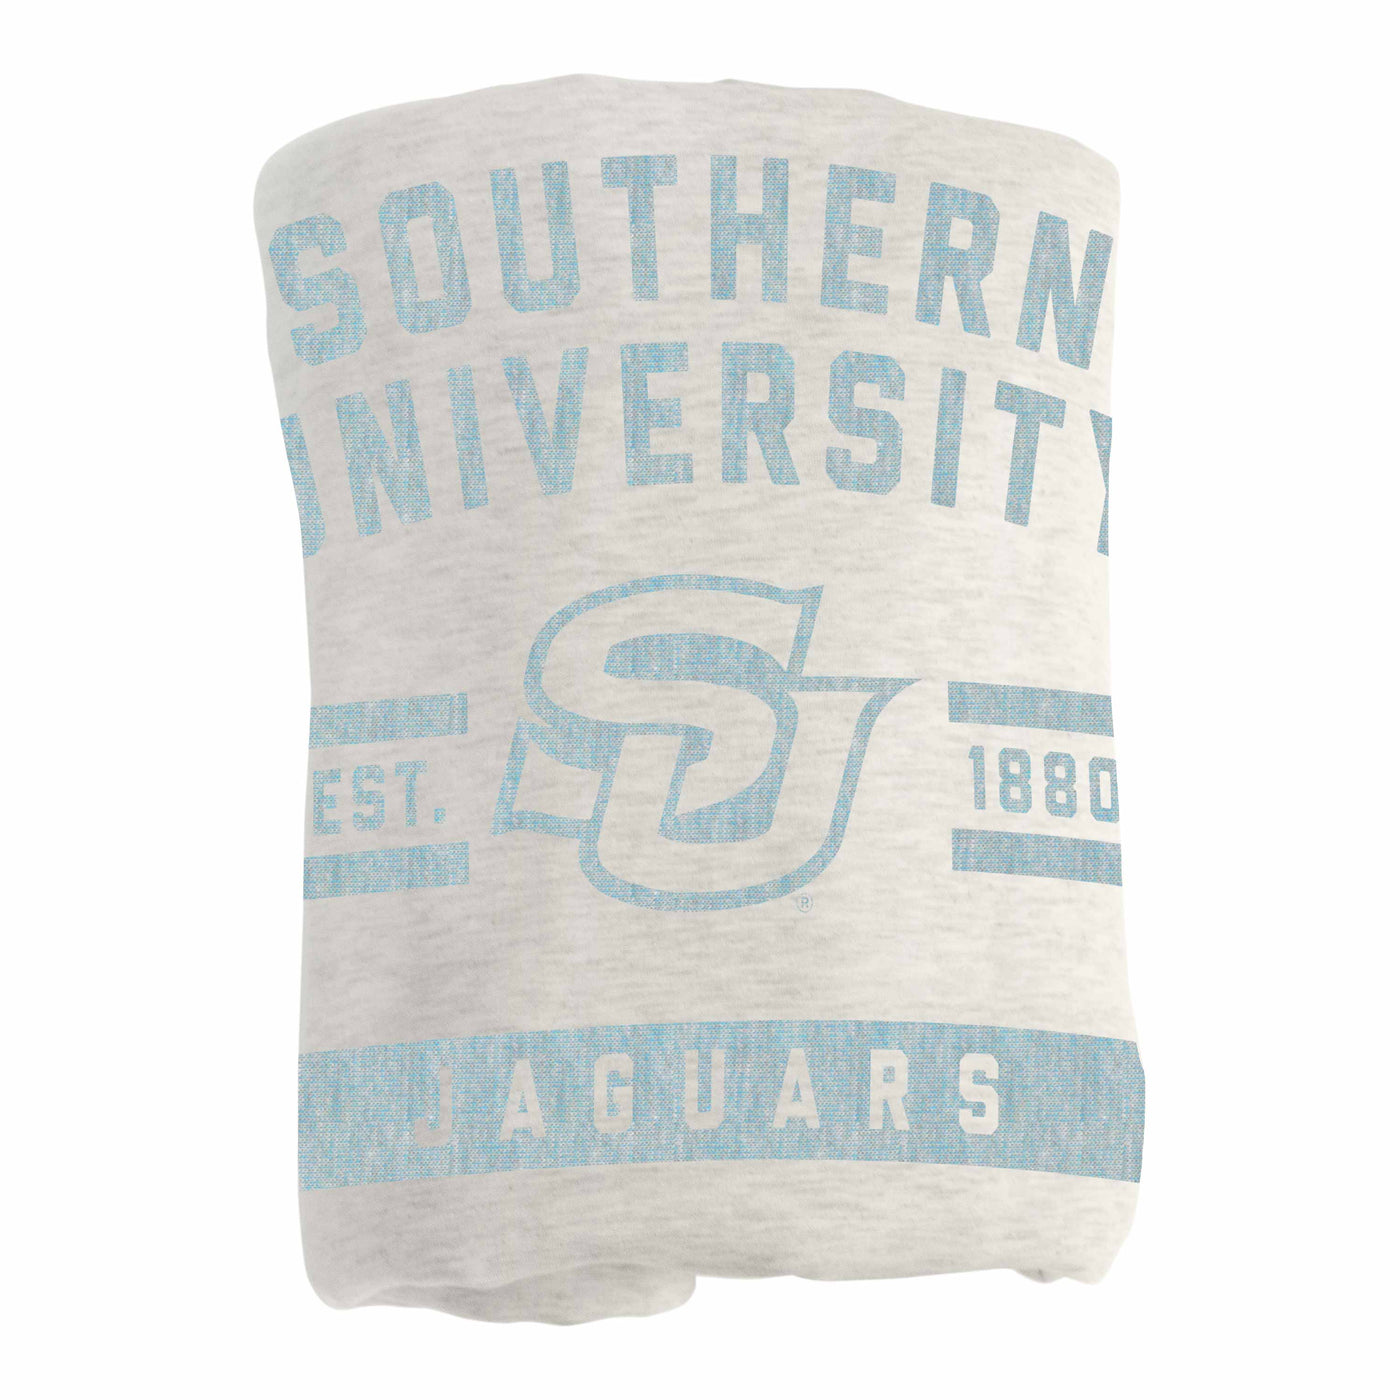 Southern University Oatmeal Sweatshirt Blanket